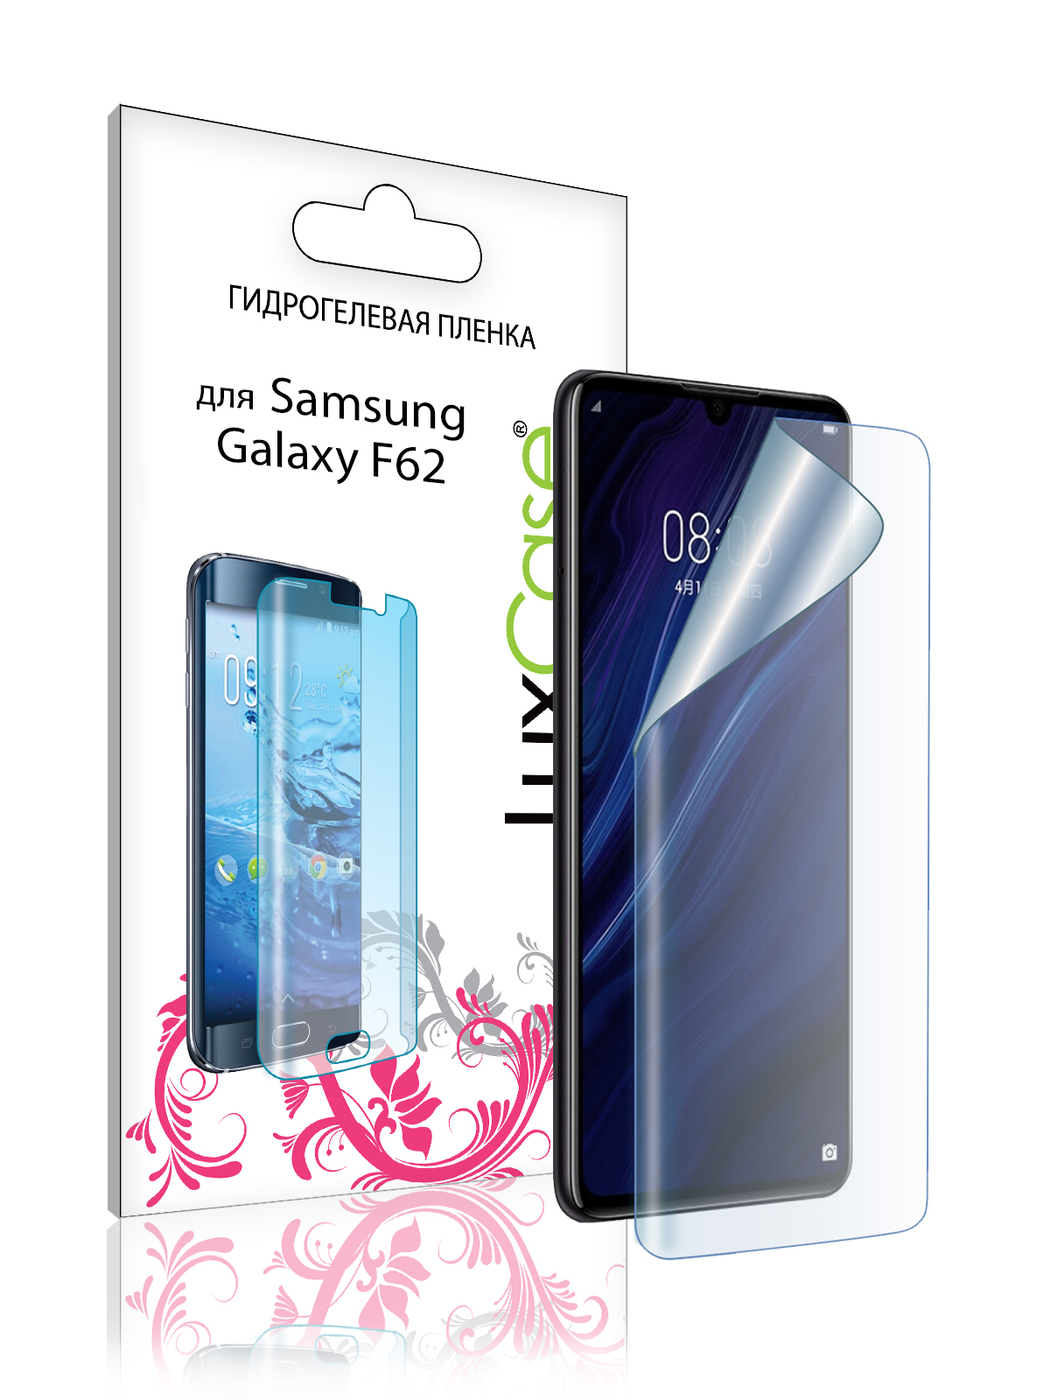 Пленка гидрогелевая LuxCase для Samsung Galaxy F62 0.14mm Front Transparent 86177 пленка на заднюю панель luxcase для samsung galaxy f62 0 14mm transparent 86178